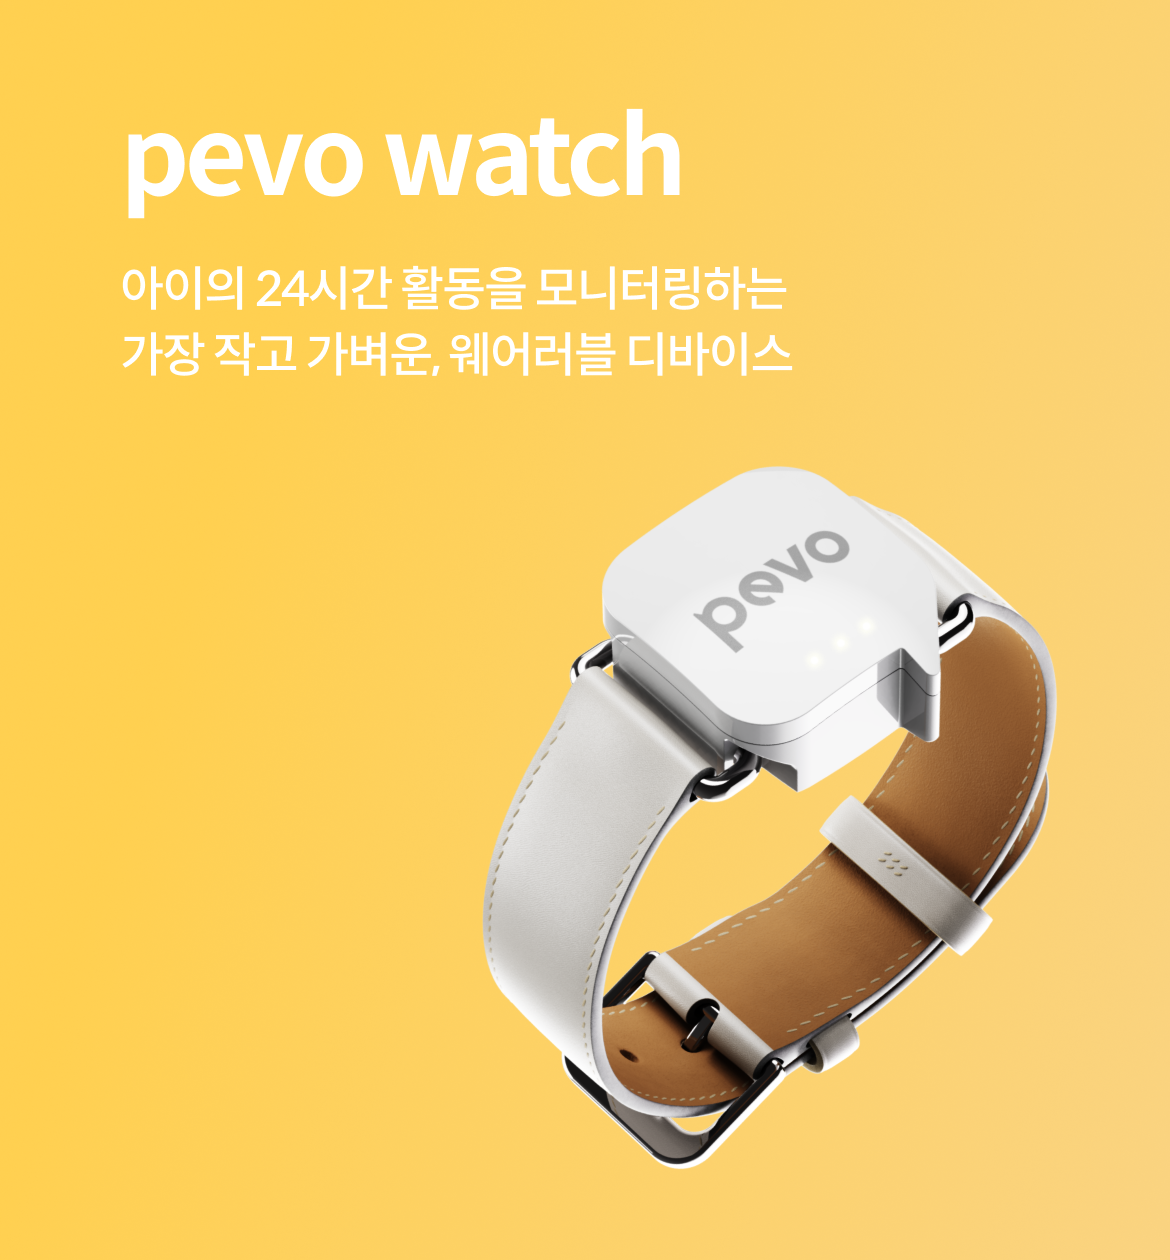 pevo watch 아이의 24시간 활동을 모니터링하는 가장 작고 가벼운, 웨어러블 디바이스